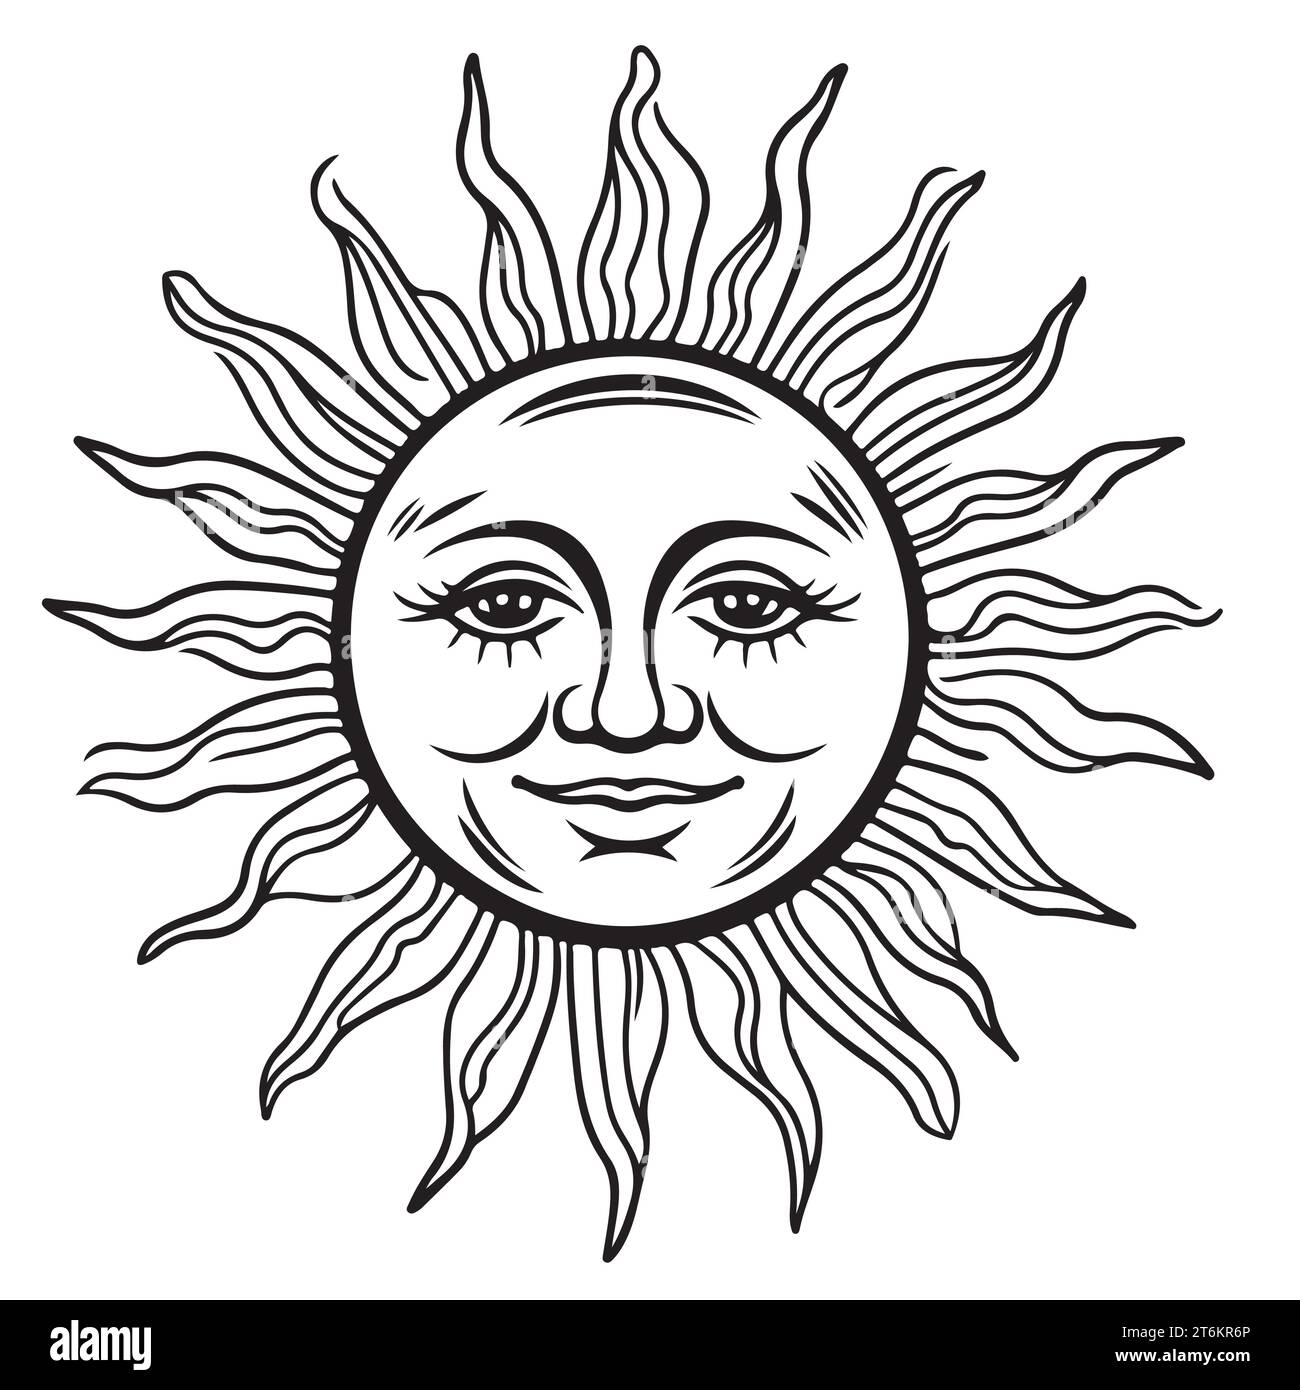 Symbole de soleil de dessin animé avec visage, emblème de style vintage simple. Dessin au trait noir et blanc . Illustration vectorielle isolée. Illustration de Vecteur